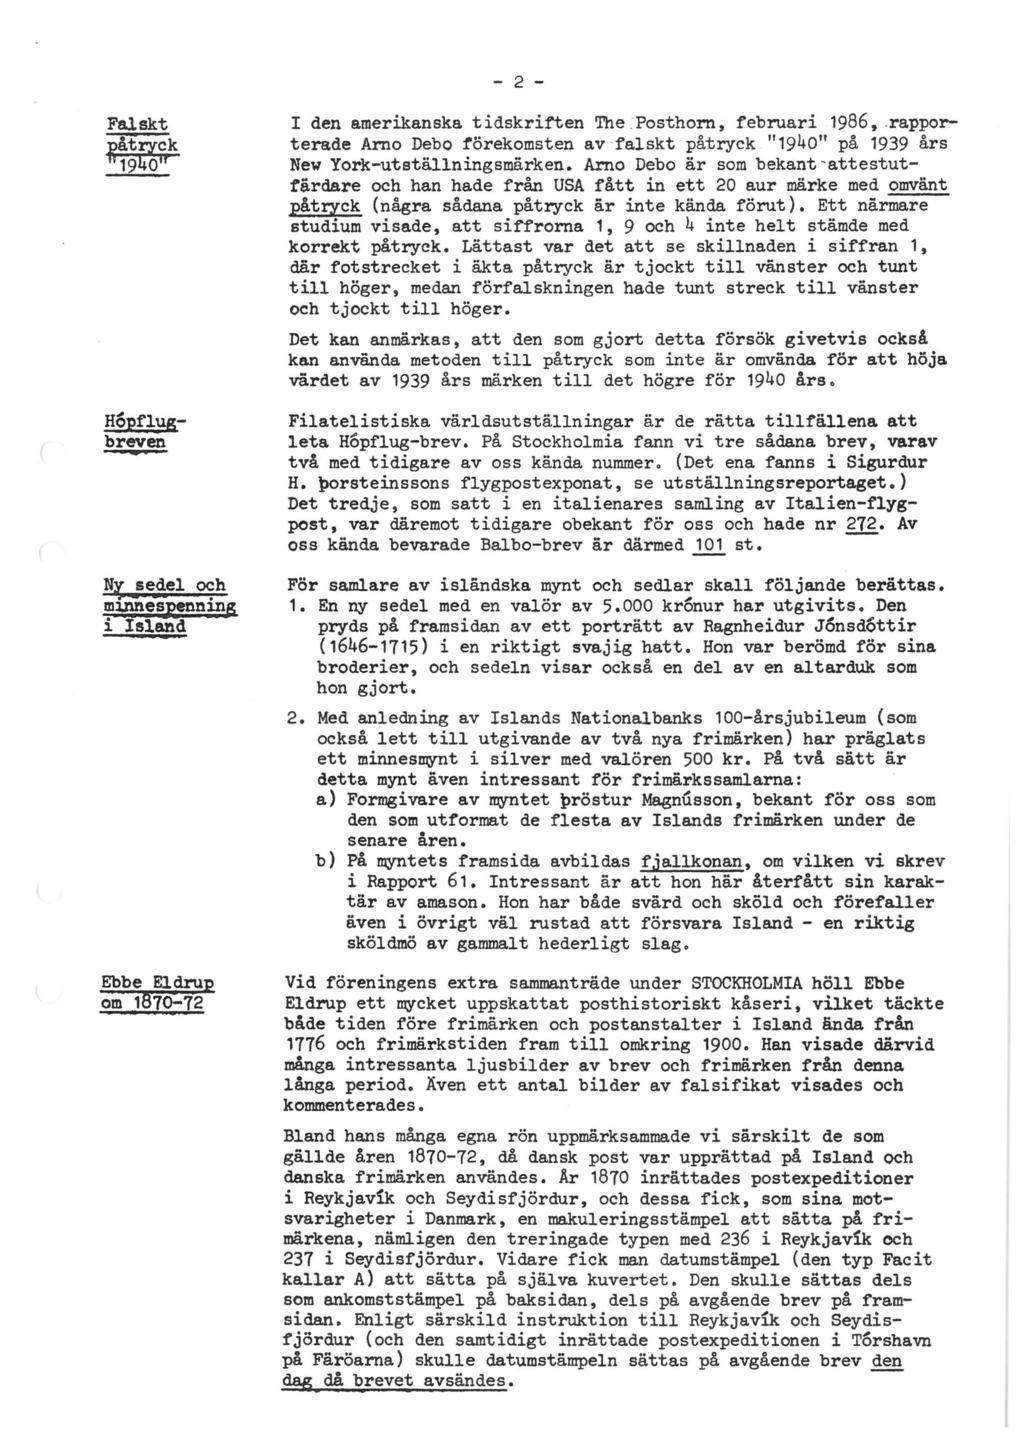 - 2 - I den amerikanska t idskri:ften The. Posthorn, februari 1986 9.rapporterade Arno Debo forekomsten av falskt patryck II 1940" pa 1939 ars New York-utetallningsmarken.